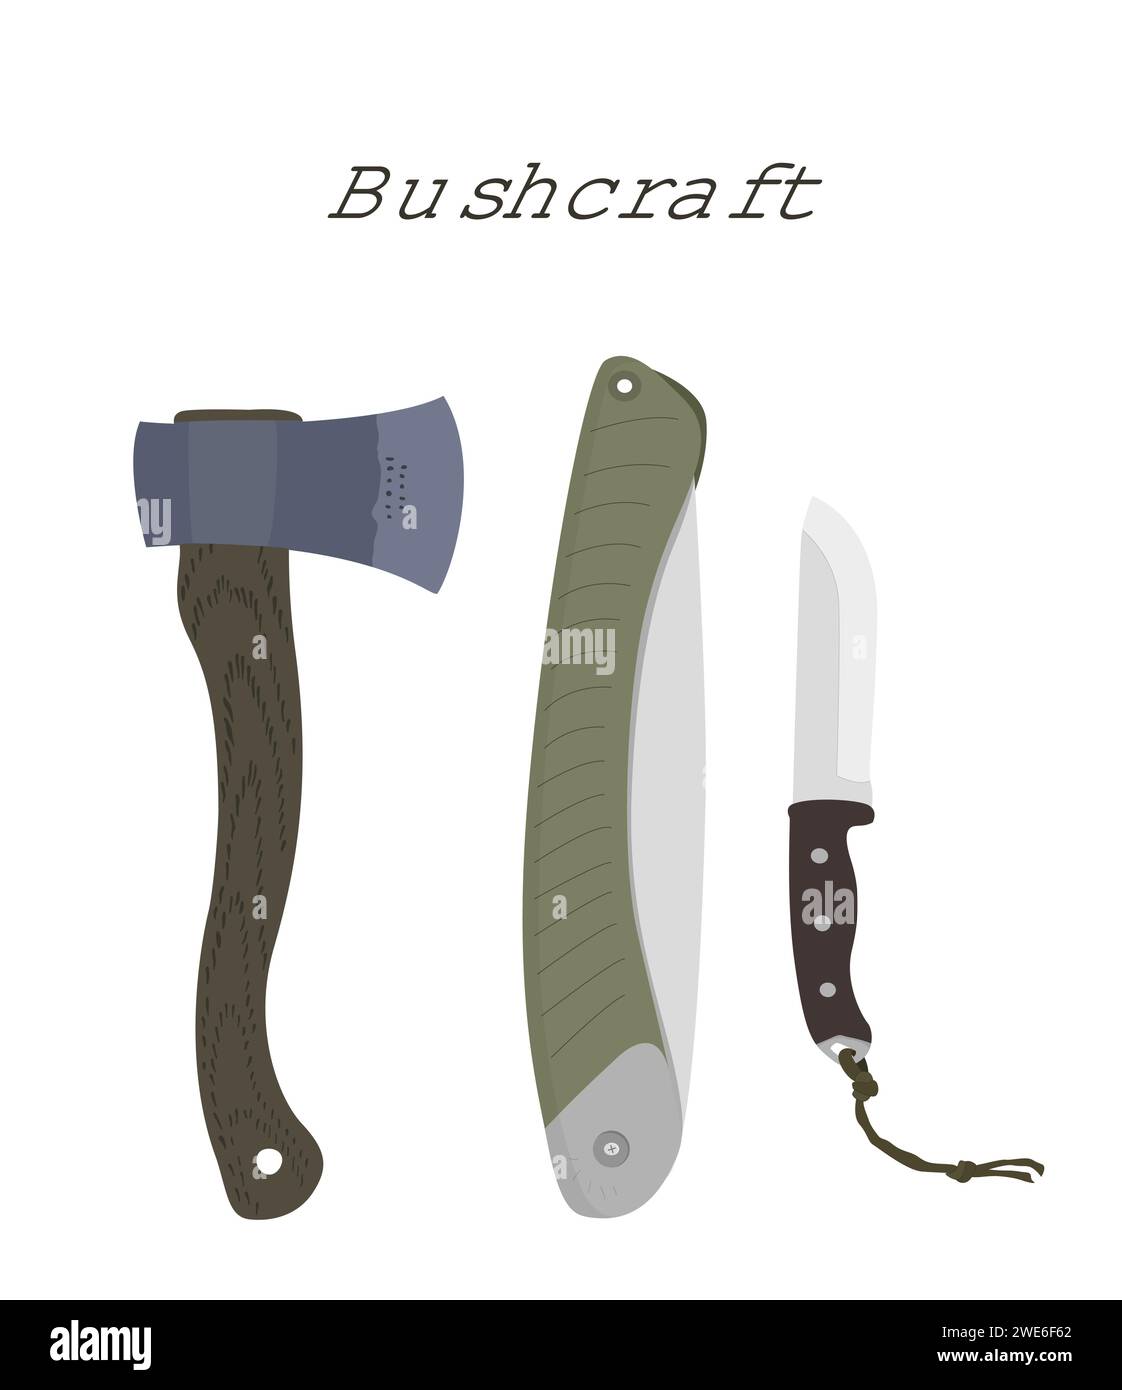 Bushcraft-Werkzeuge: Säge, Messer, Axt. Zeichnungssatz. Bearbeitbare EPS auf Ebenen. Vektorabbildung Stock Vektor